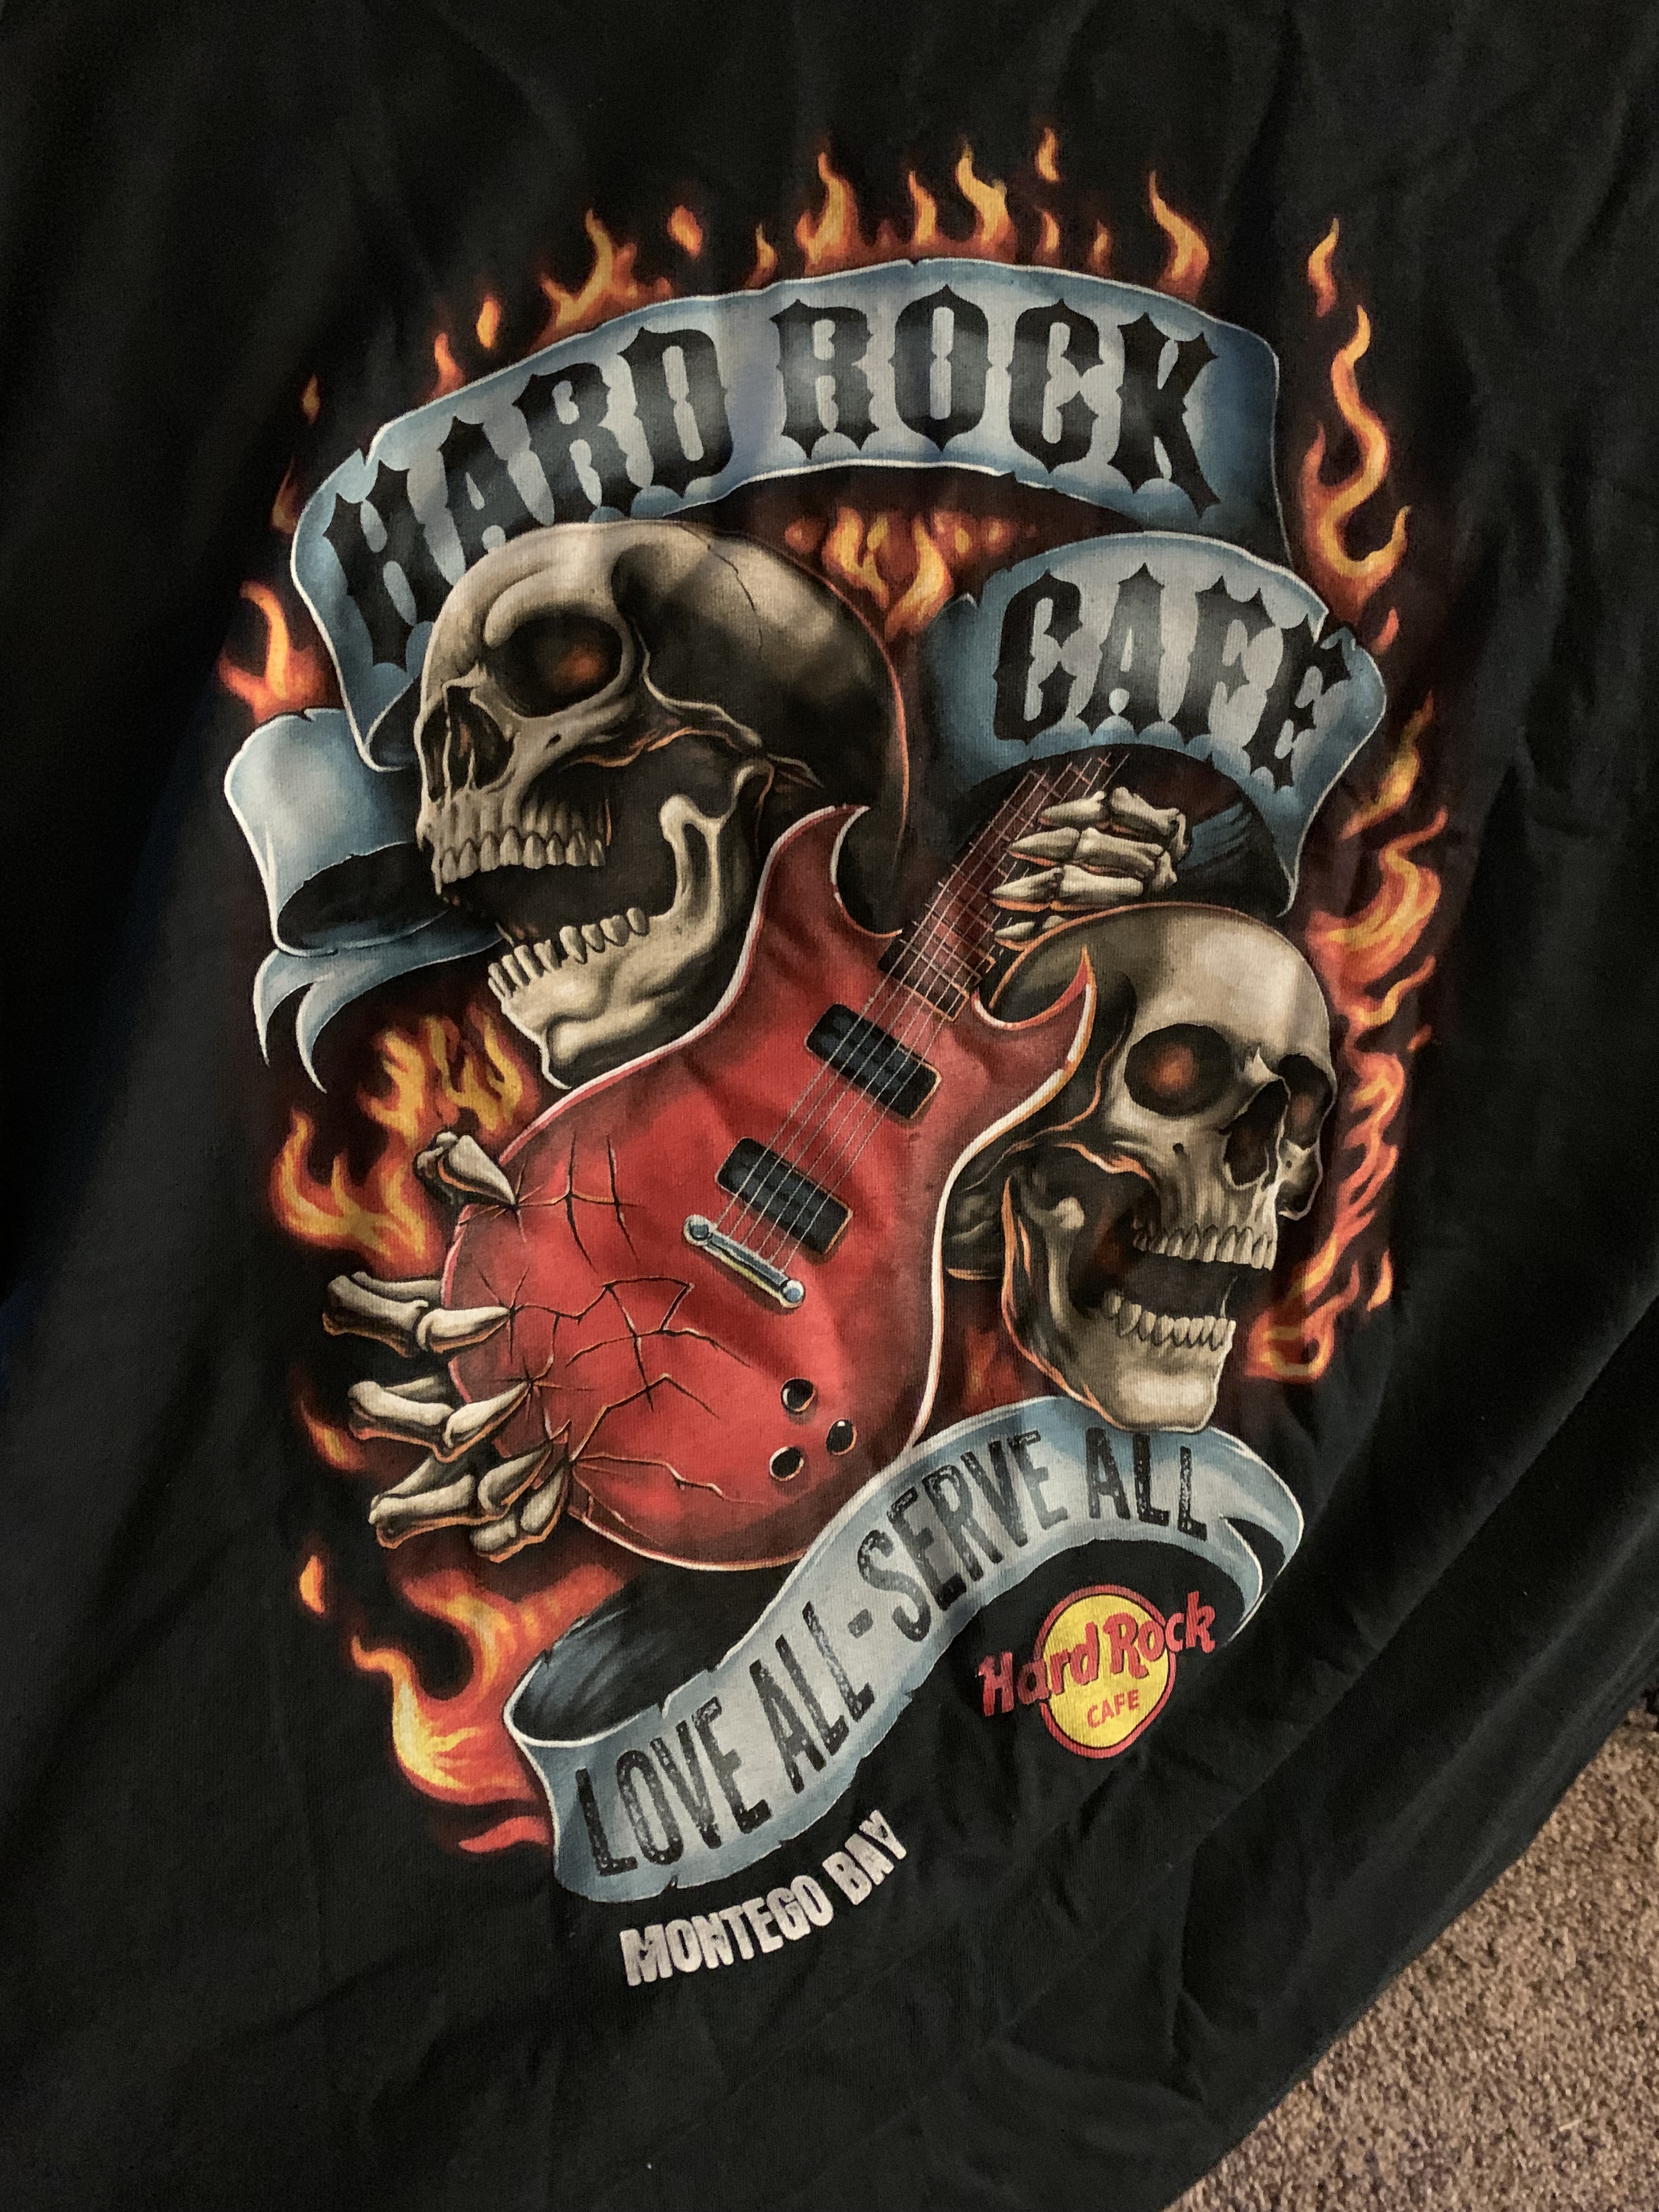 rock t shirt design